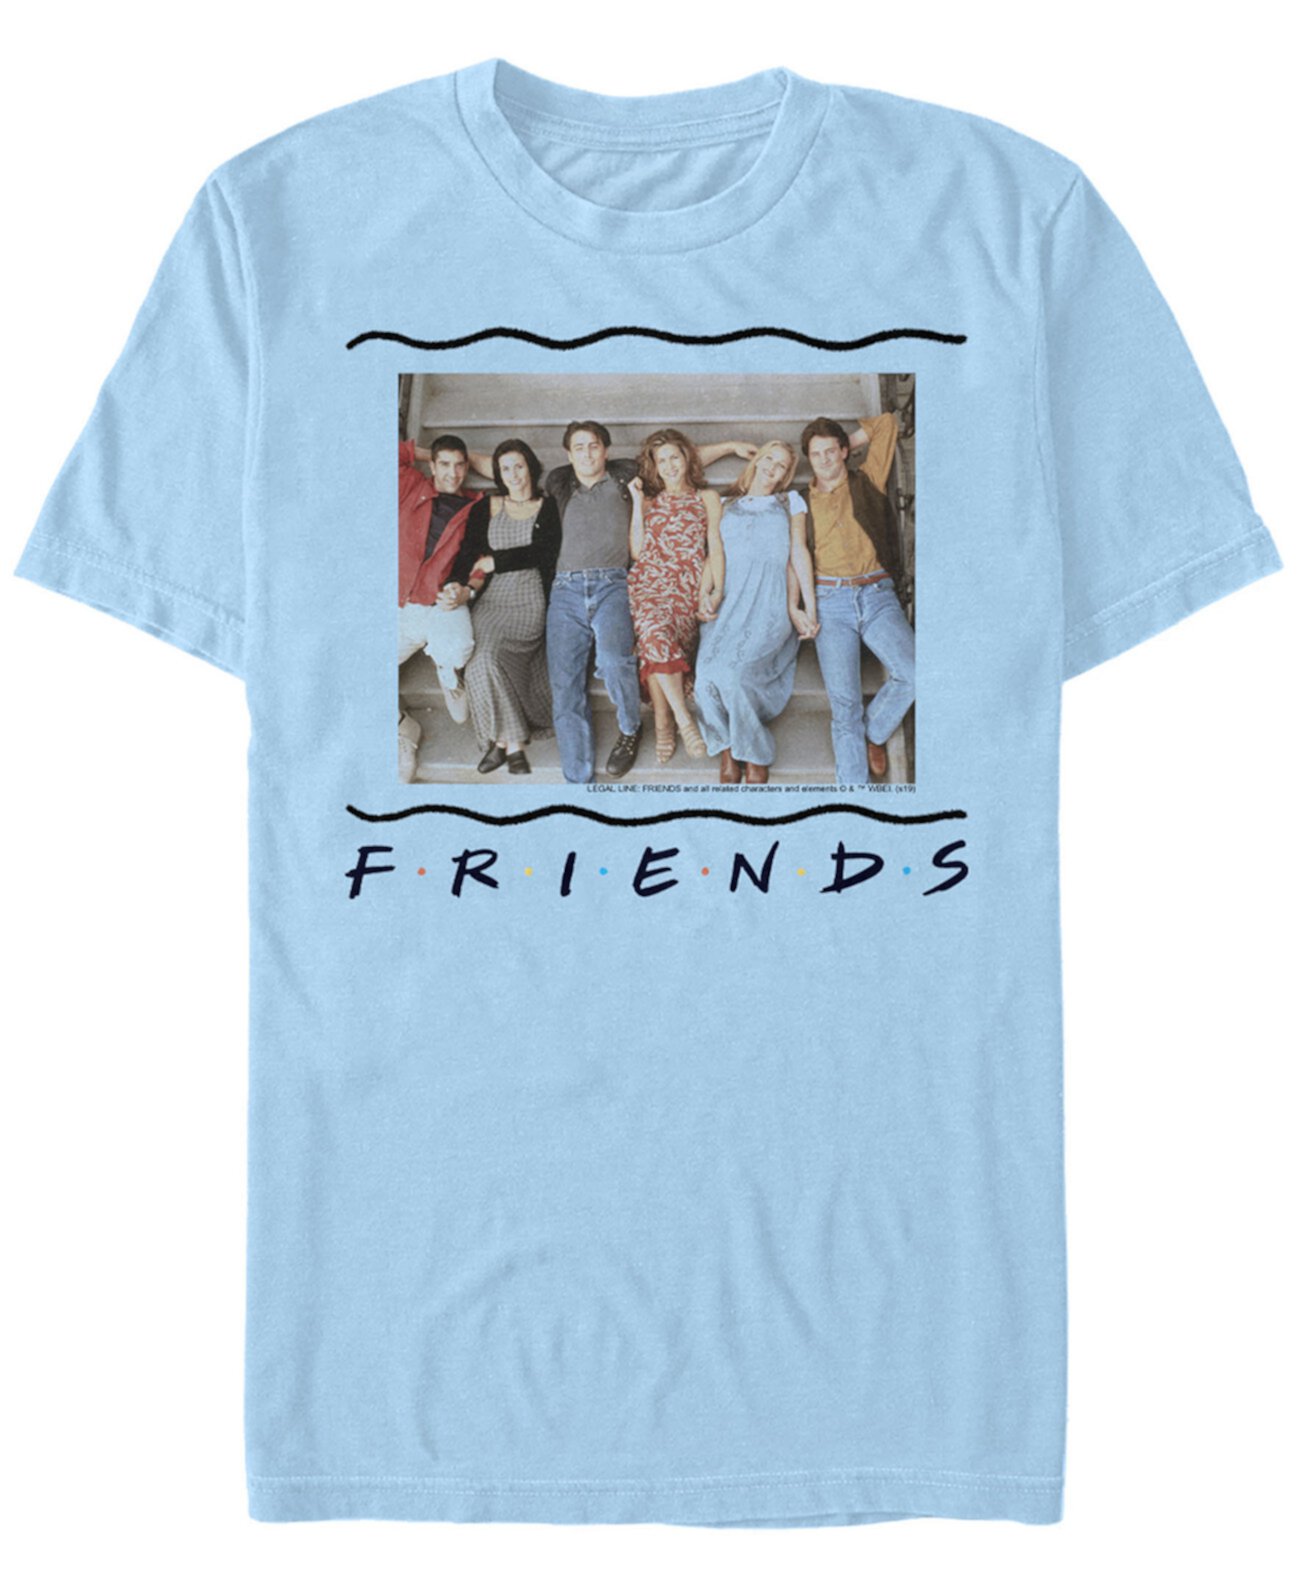 Мужская футболка с короткими рукавами в стиле 90-х с групповым портретом Friends FIFTH SUN